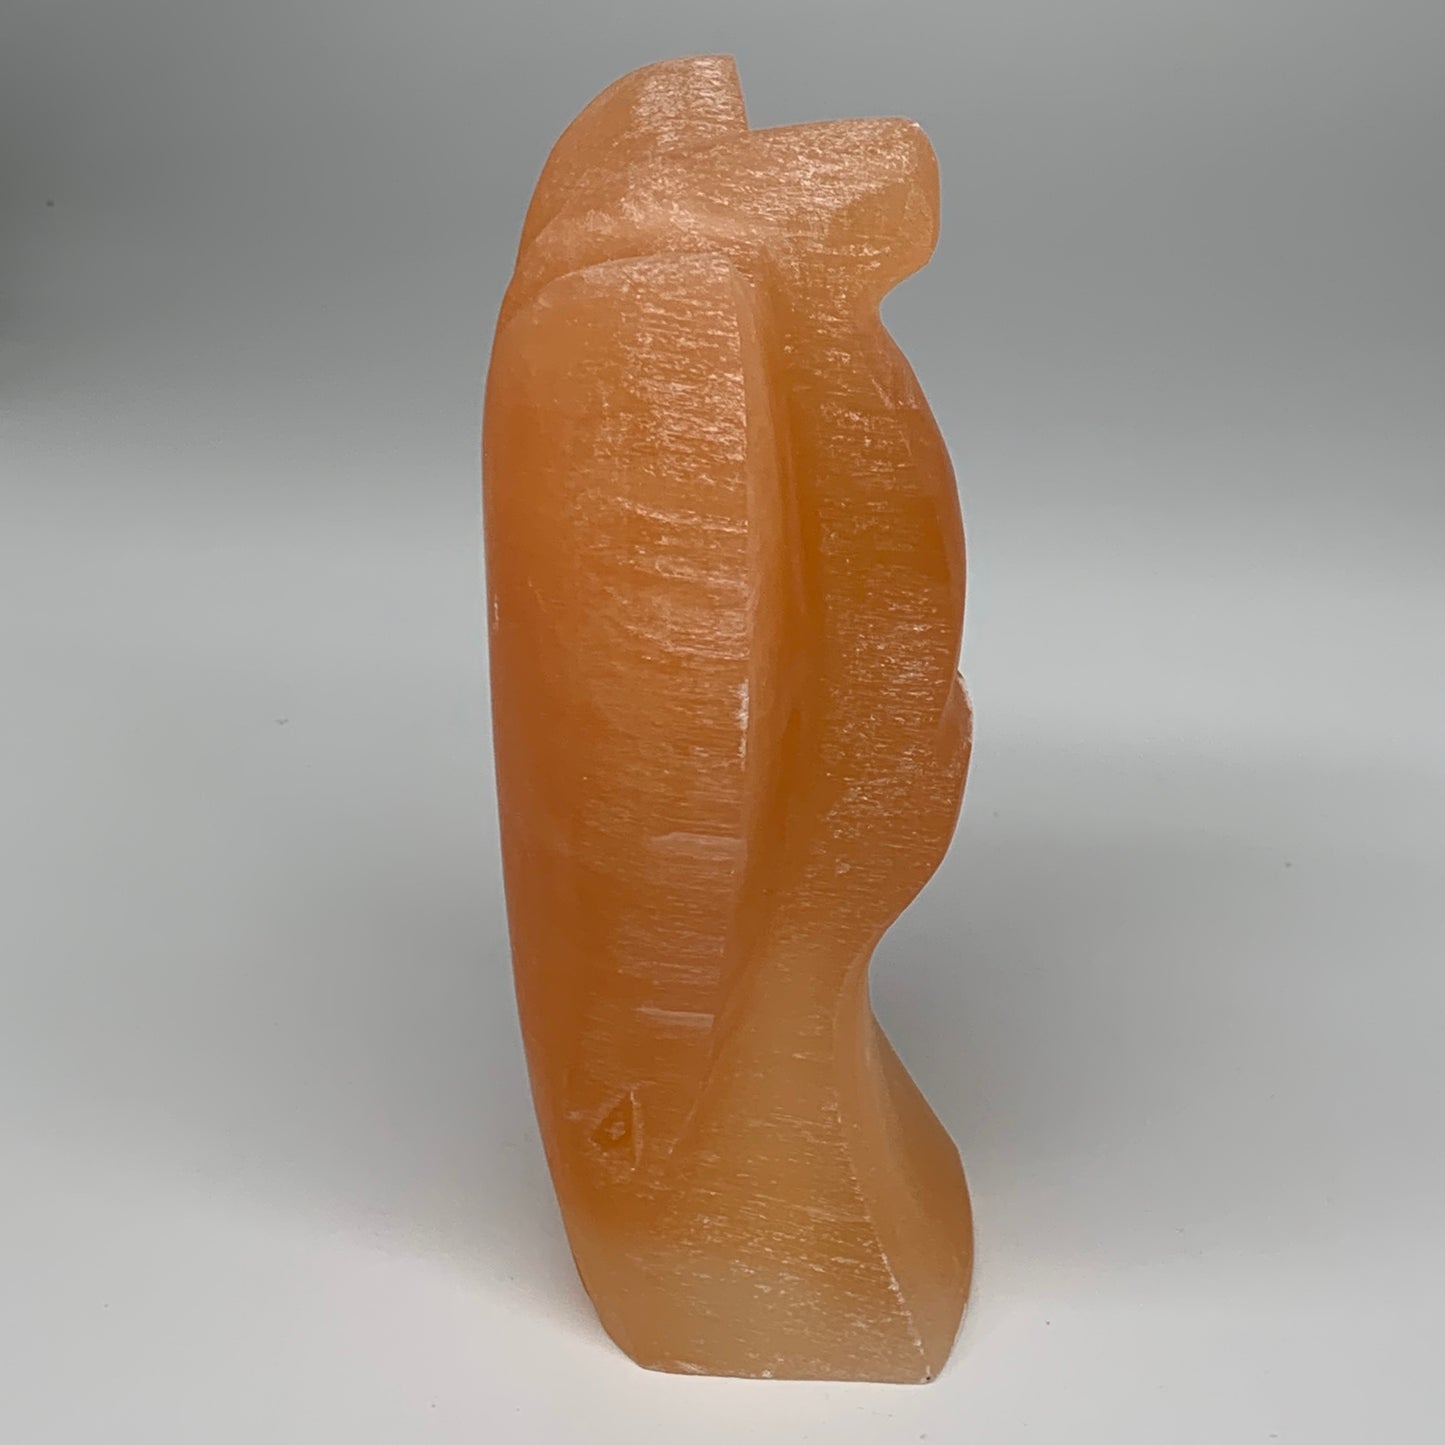 1858g, 8"x4.7"x3" Orange Selenite (Satin Spar) Angel Lamps @Morocco,B9437